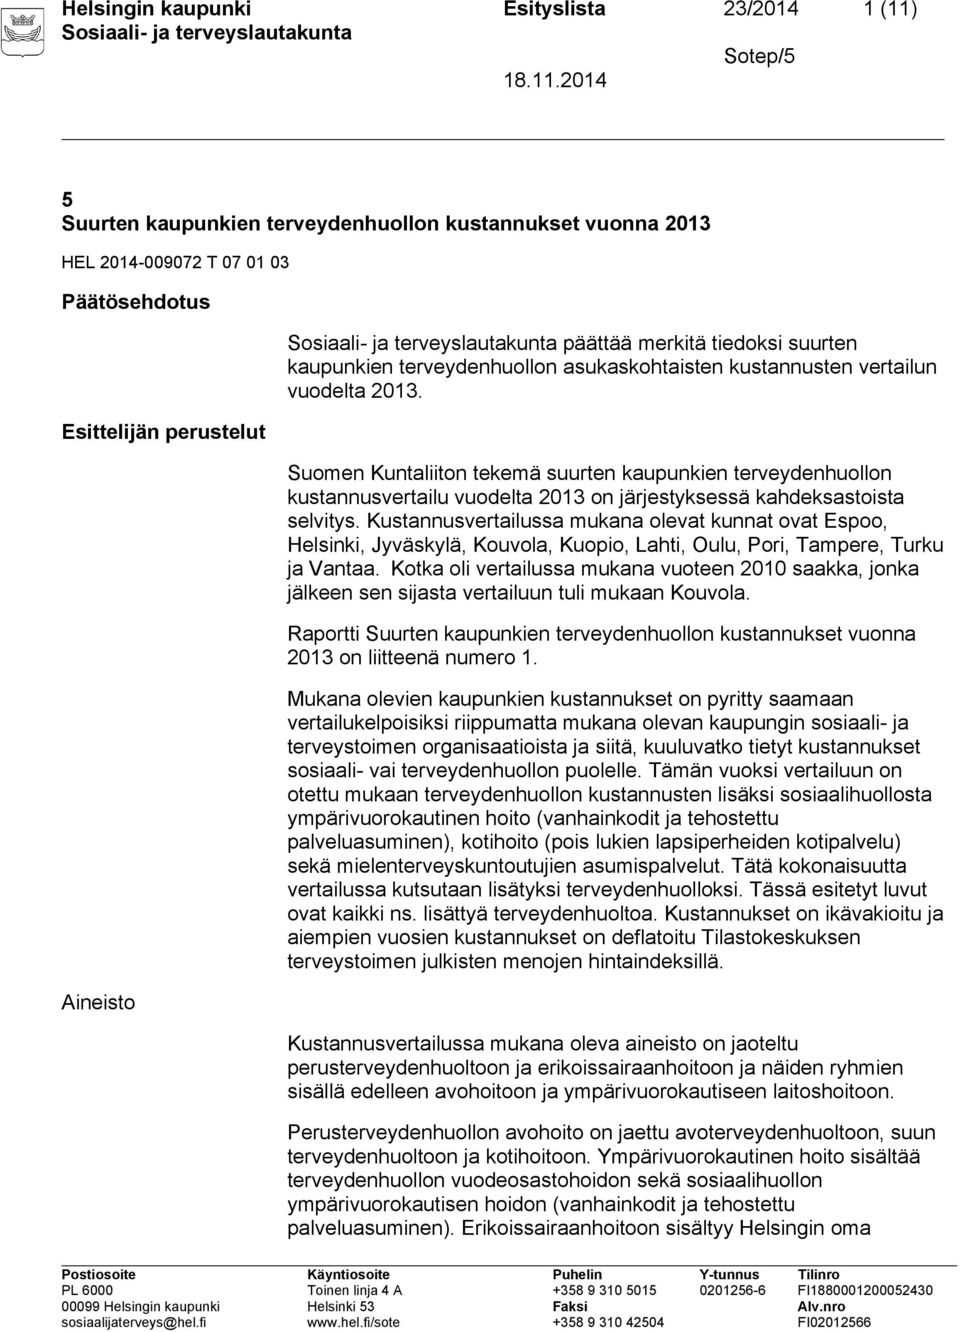 Suomen Kuntaliiton tekemä suurten kaupunkien terveydenhuollon kustannusvertailu vuodelta 2013 on järjestyksessä kahdeksastoista selvitys.